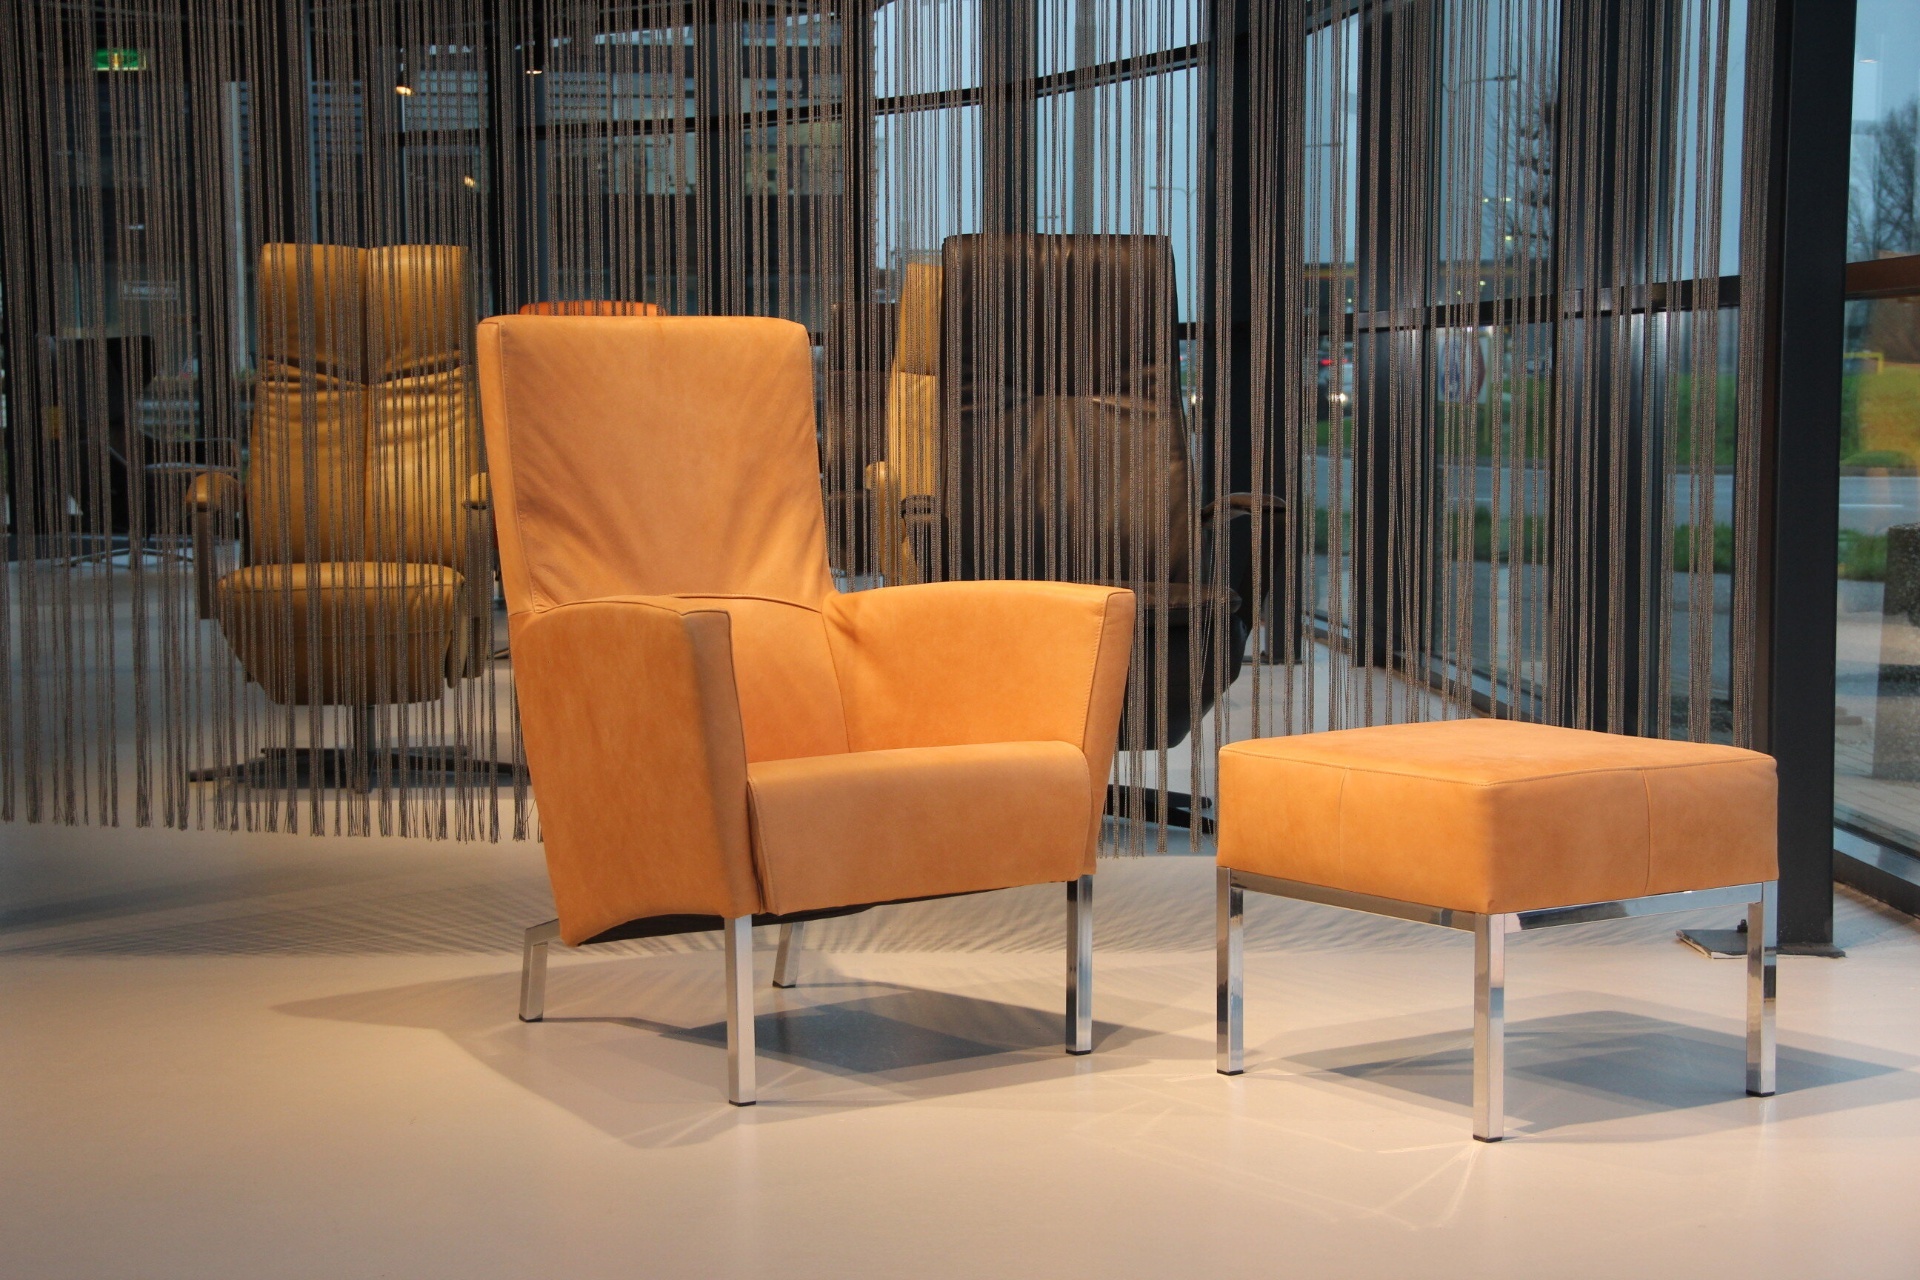 Design fauteuil Living in leer van Ojee Design met Hocker